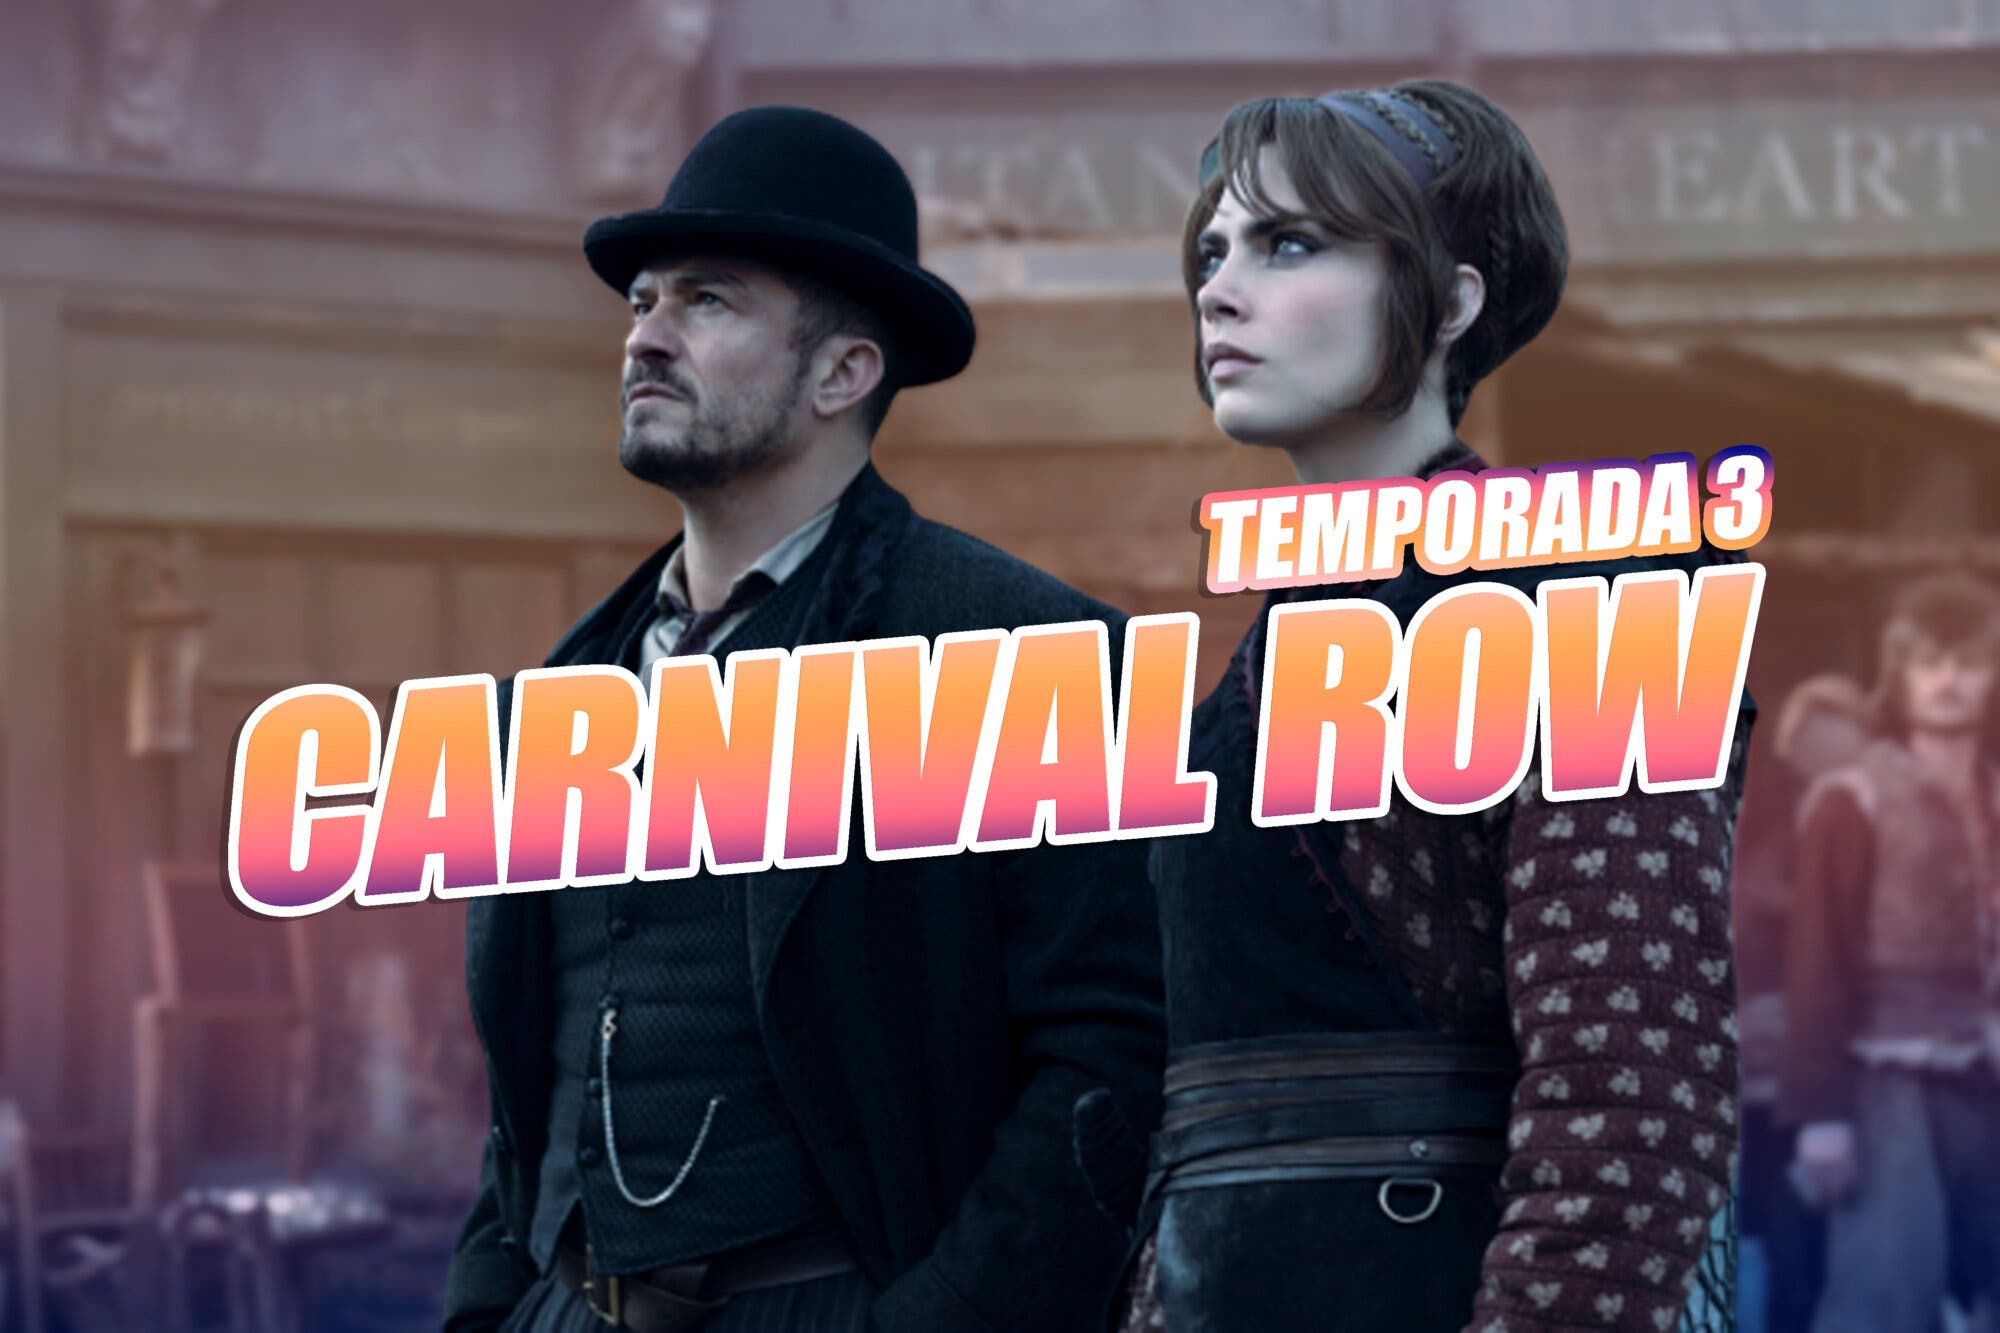 Temporada 3 de Carnival Row en Prime Video: ¿Cancelada? ¿O renovada?